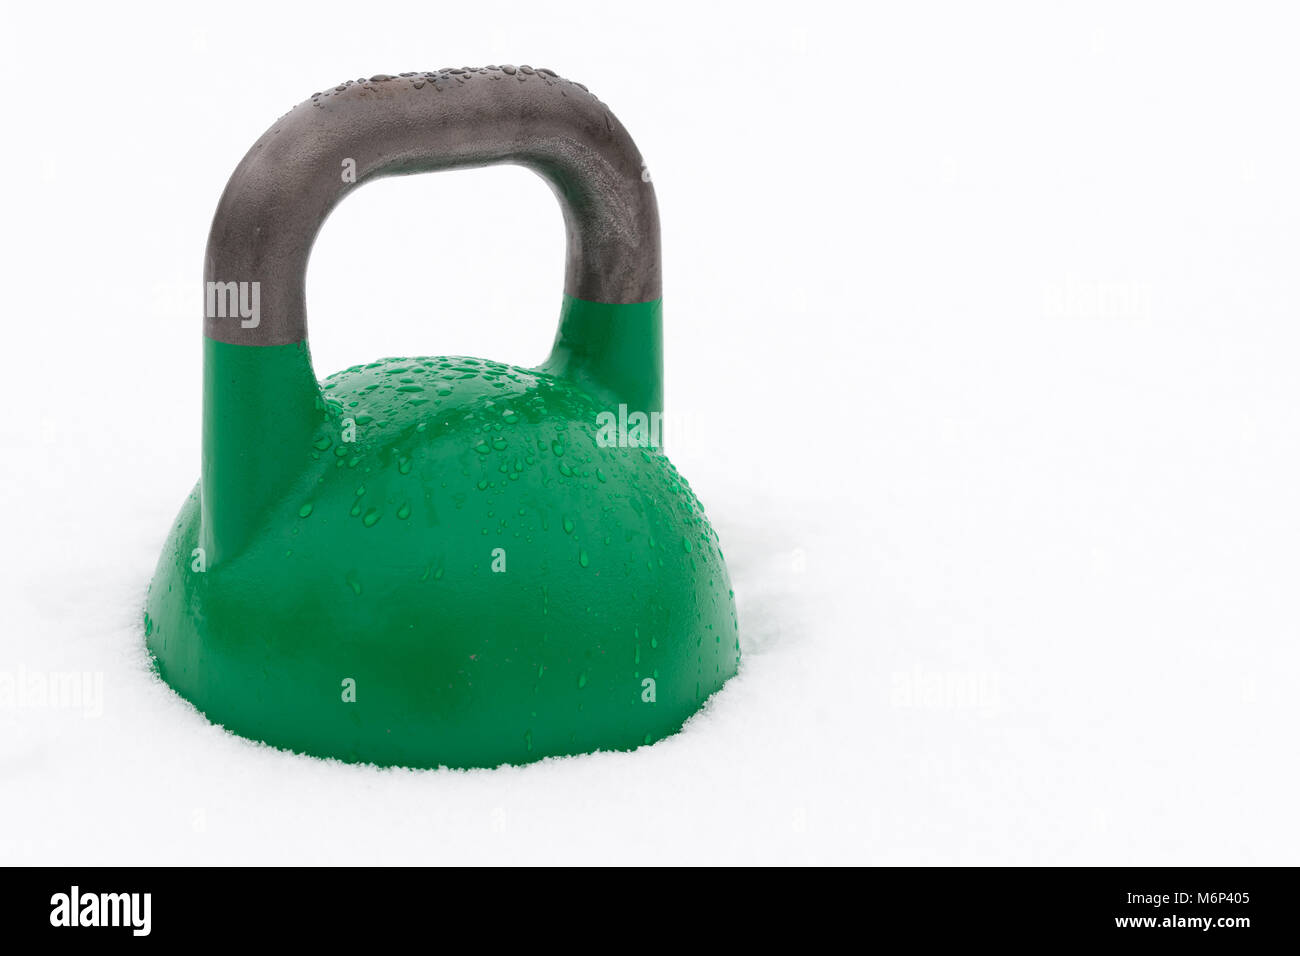 La concurrence verte couverte de kettlebell les gouttelettes d'eau à l'extérieur dans la neige. Copie potentiel espace à droite de kettlebell. Banque D'Images